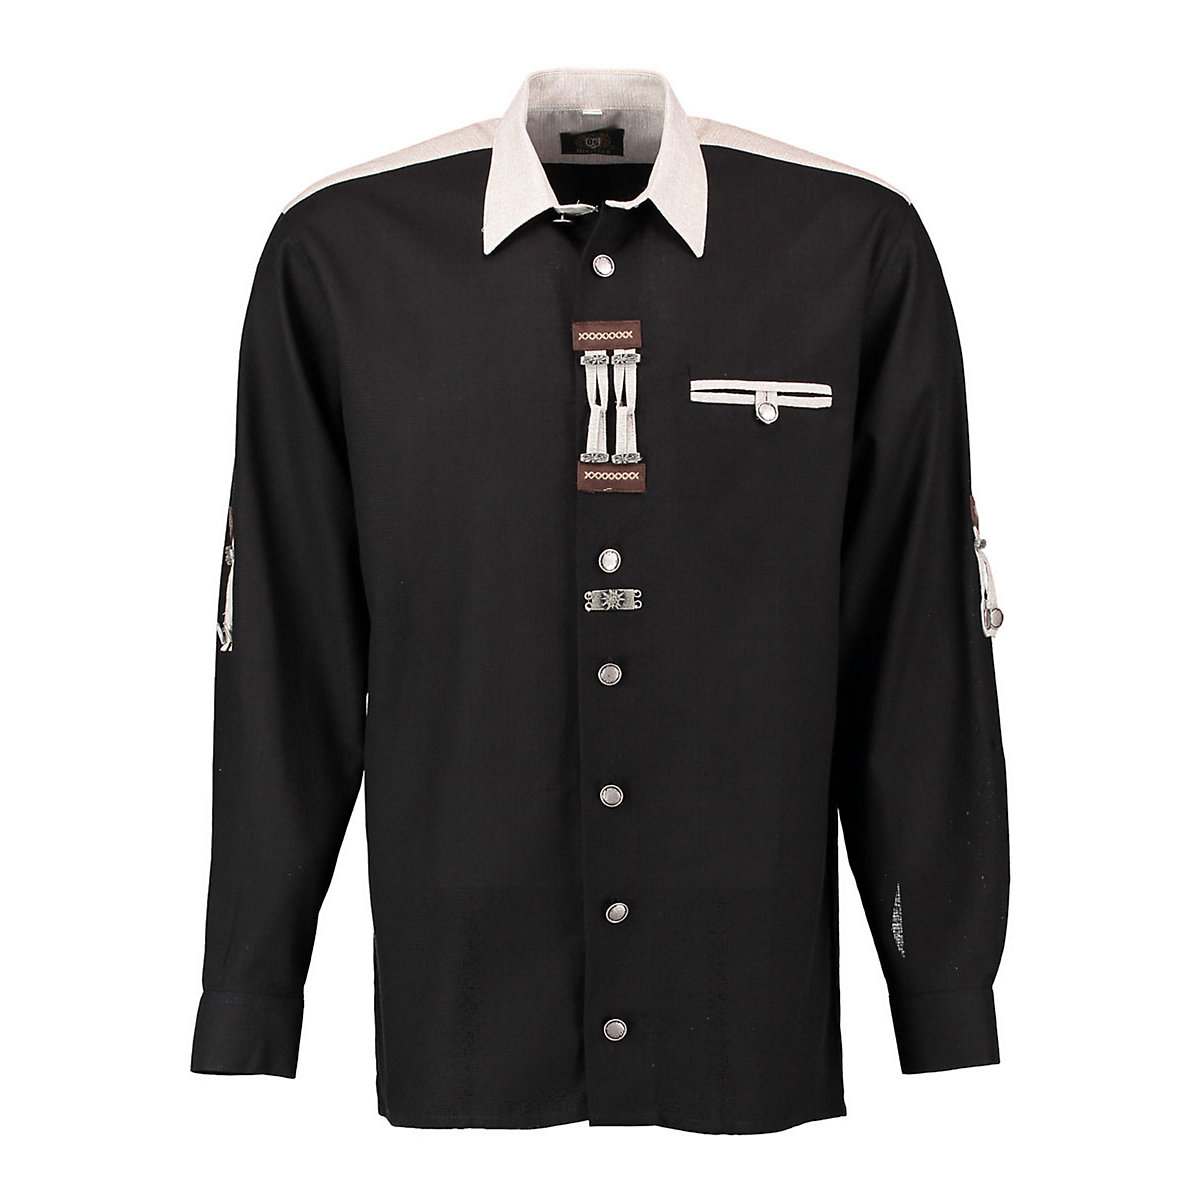 OS Trachten Herren Langarm Trachtenhemd mit Paspeltasche Zierteile auf der Knopfleiste Nevai schwarz